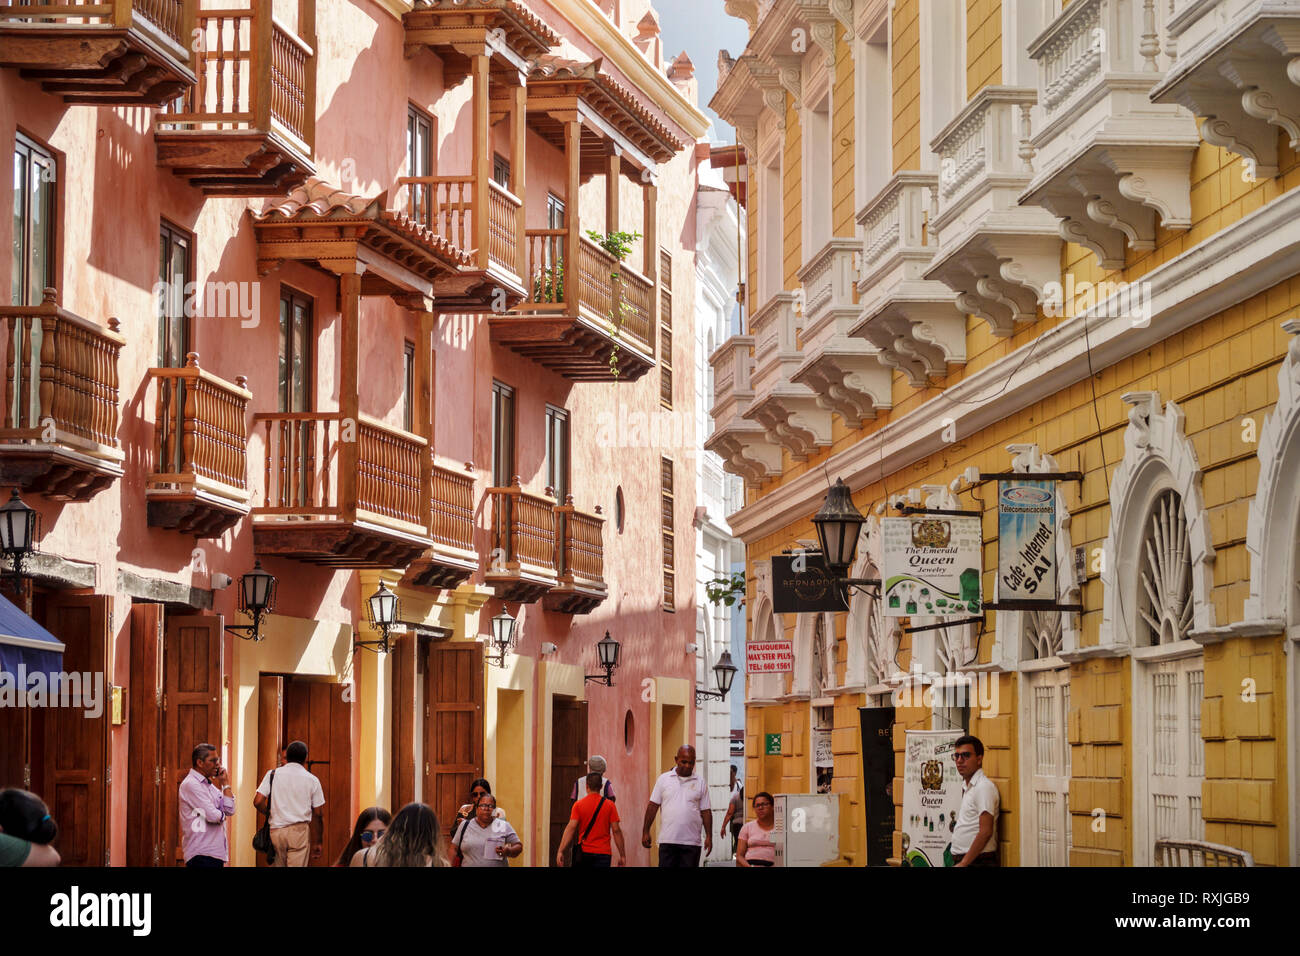 Cartagena Kolumbien, schmale Straße, Einwohner von Hispanic, Kolonialarchitektur, Holzbalkone, Fassade, Fußgängerzone, COL190119192 Stockfoto